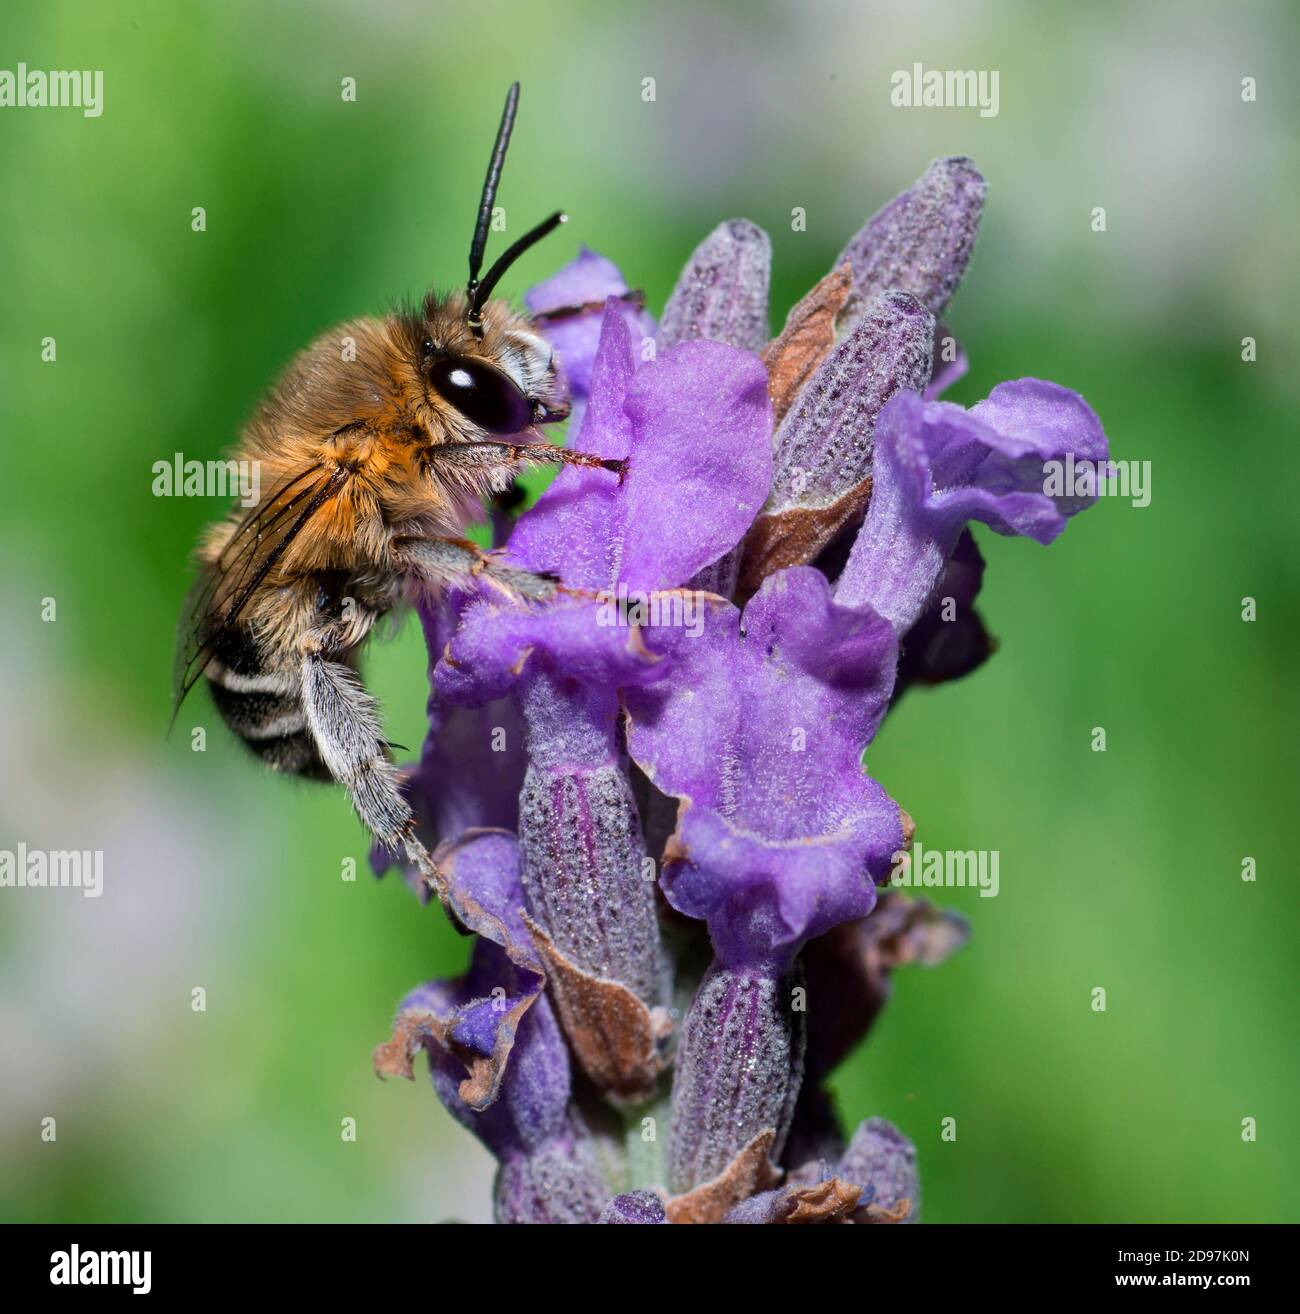 Anthophora (Anthophora pubescens) male on lavender (Lavandula angustifolia), Pays de Loire, France Stock Photo